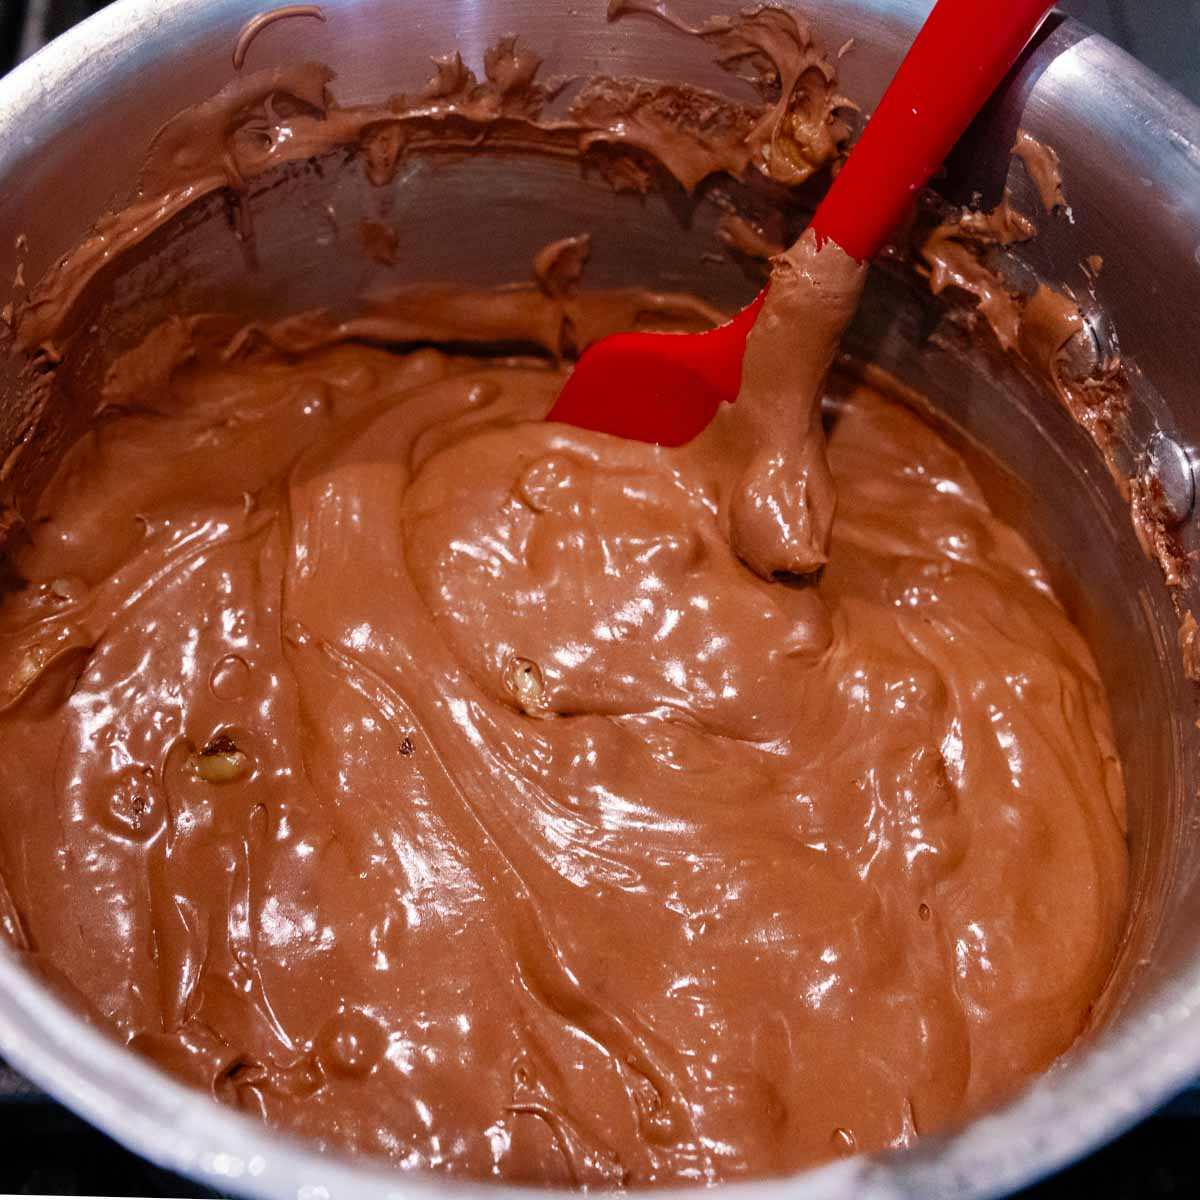 chocolate fudge mixture on the stove.